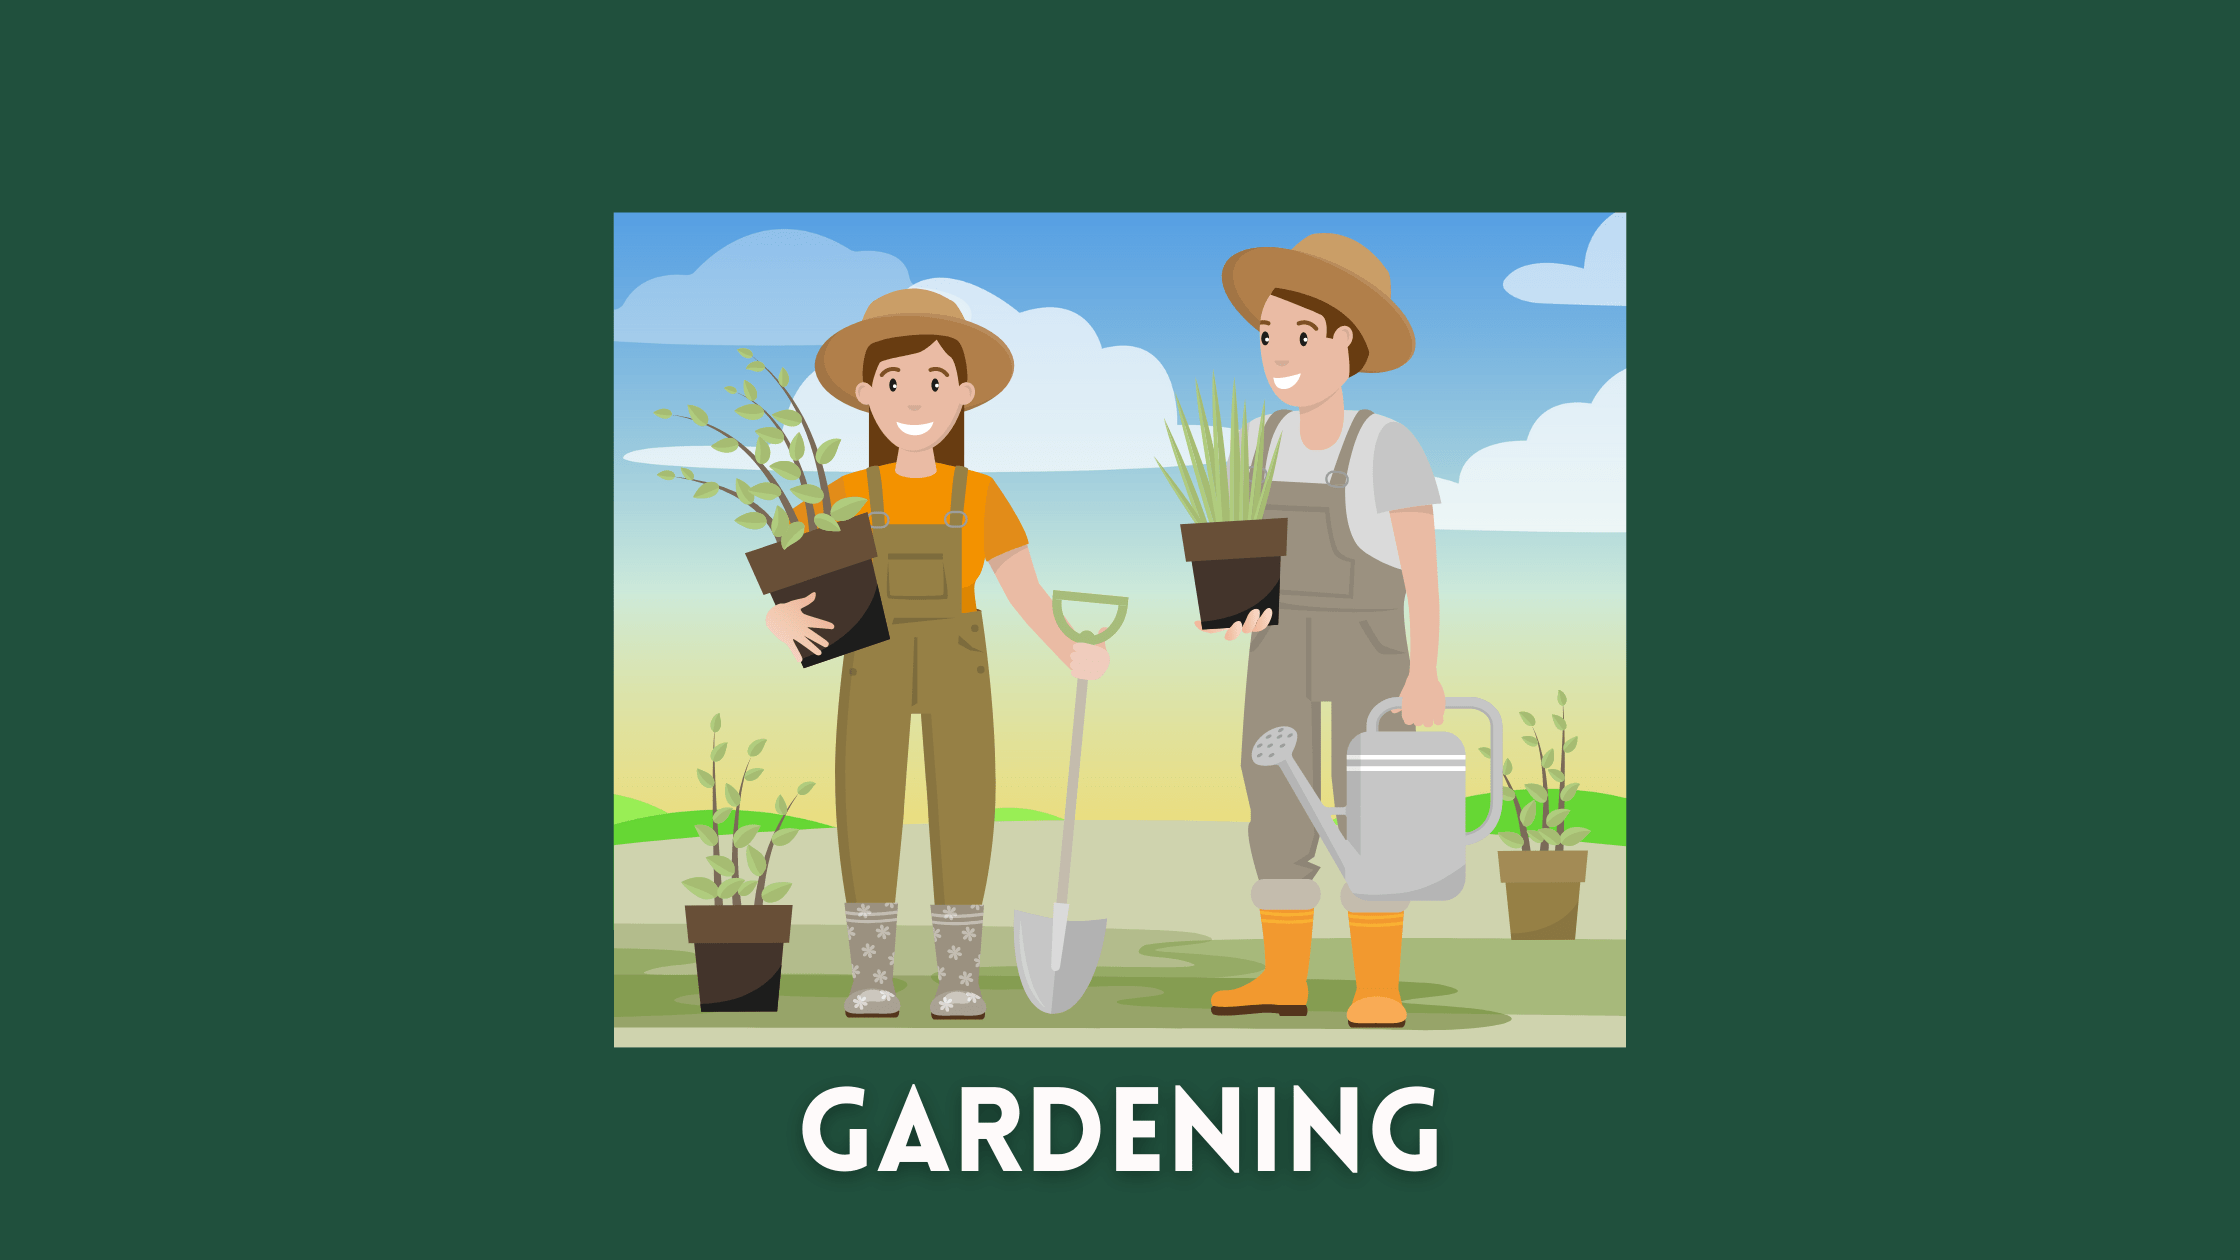 AI startup ideas in gardening